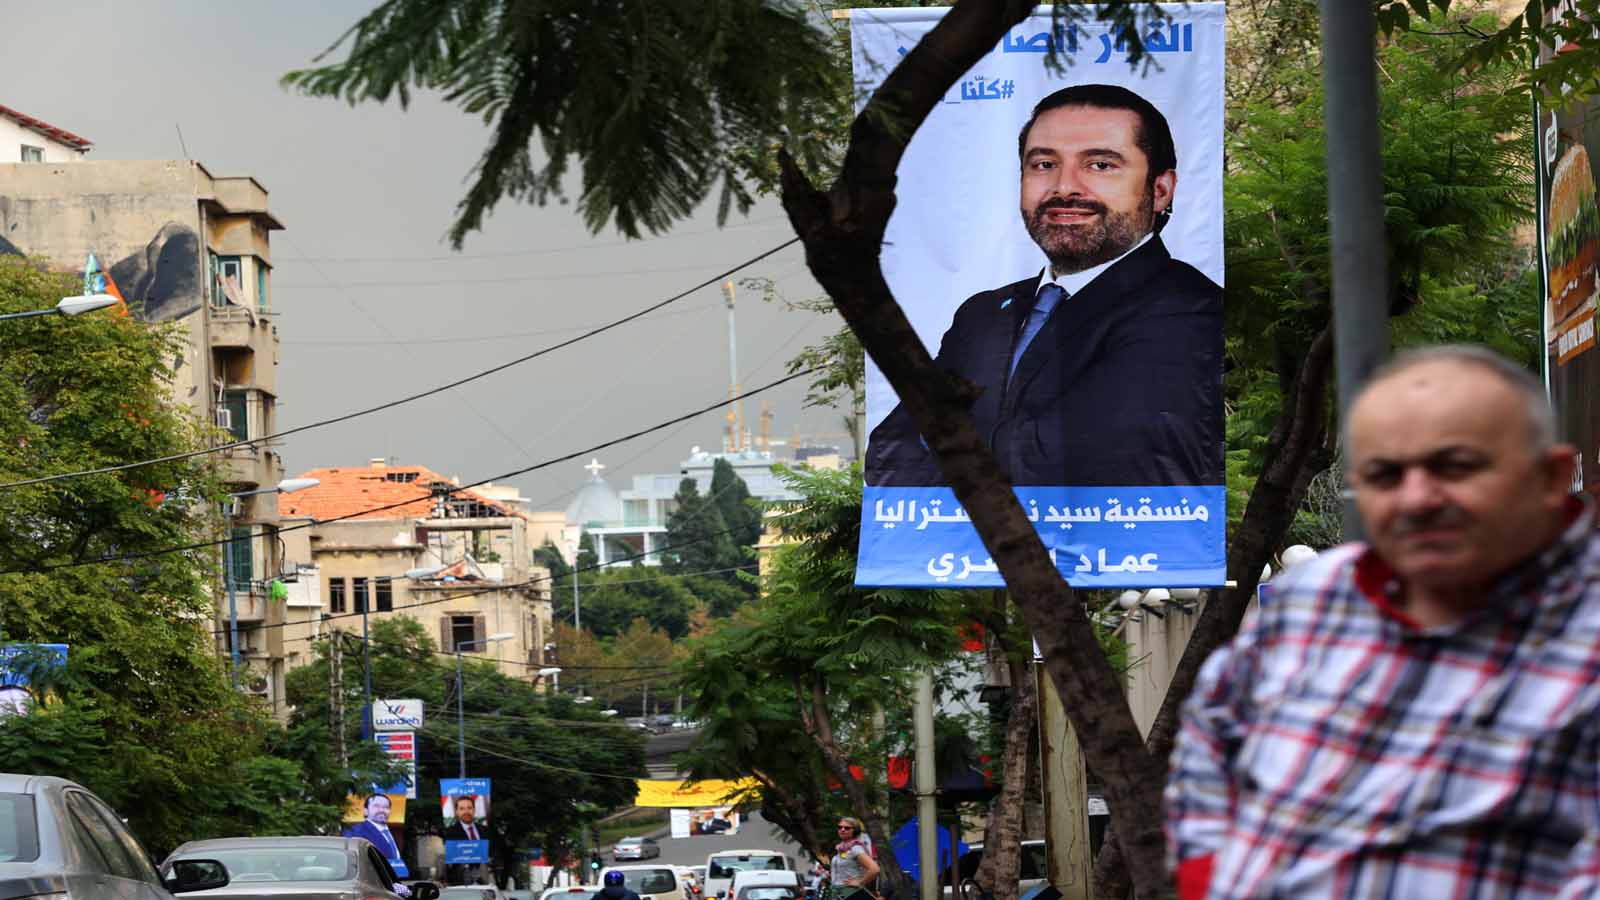 يافطات تأييد للرئيس سعد الحريري في شوارع بيروت (علي علوش)